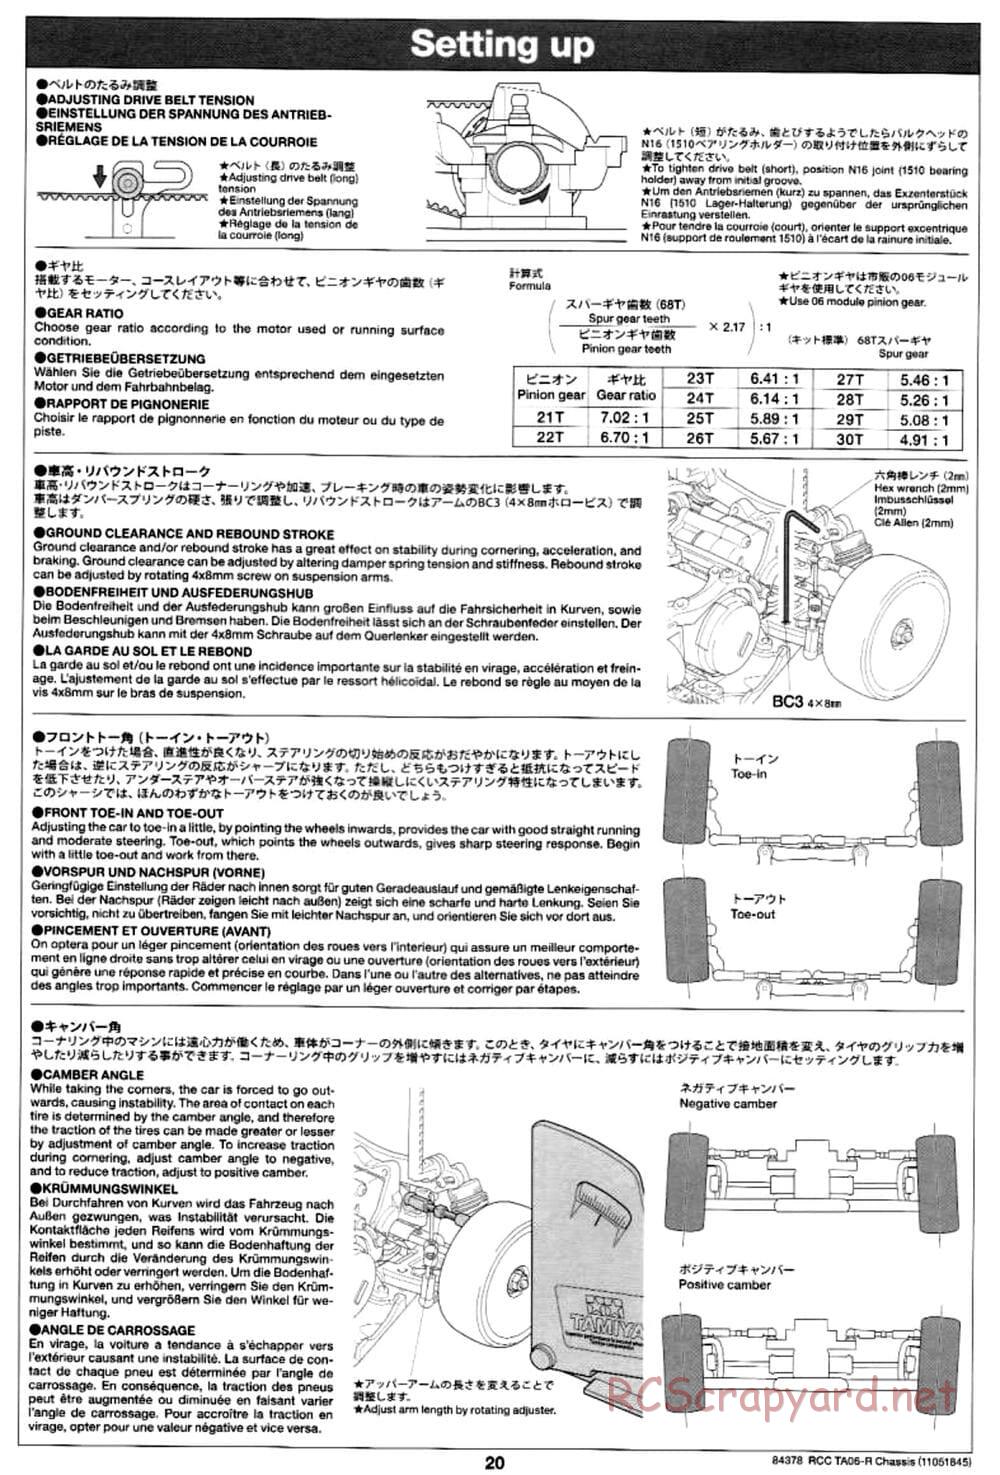 Tamiya - TA06-R Chassis - Manual - Page 20